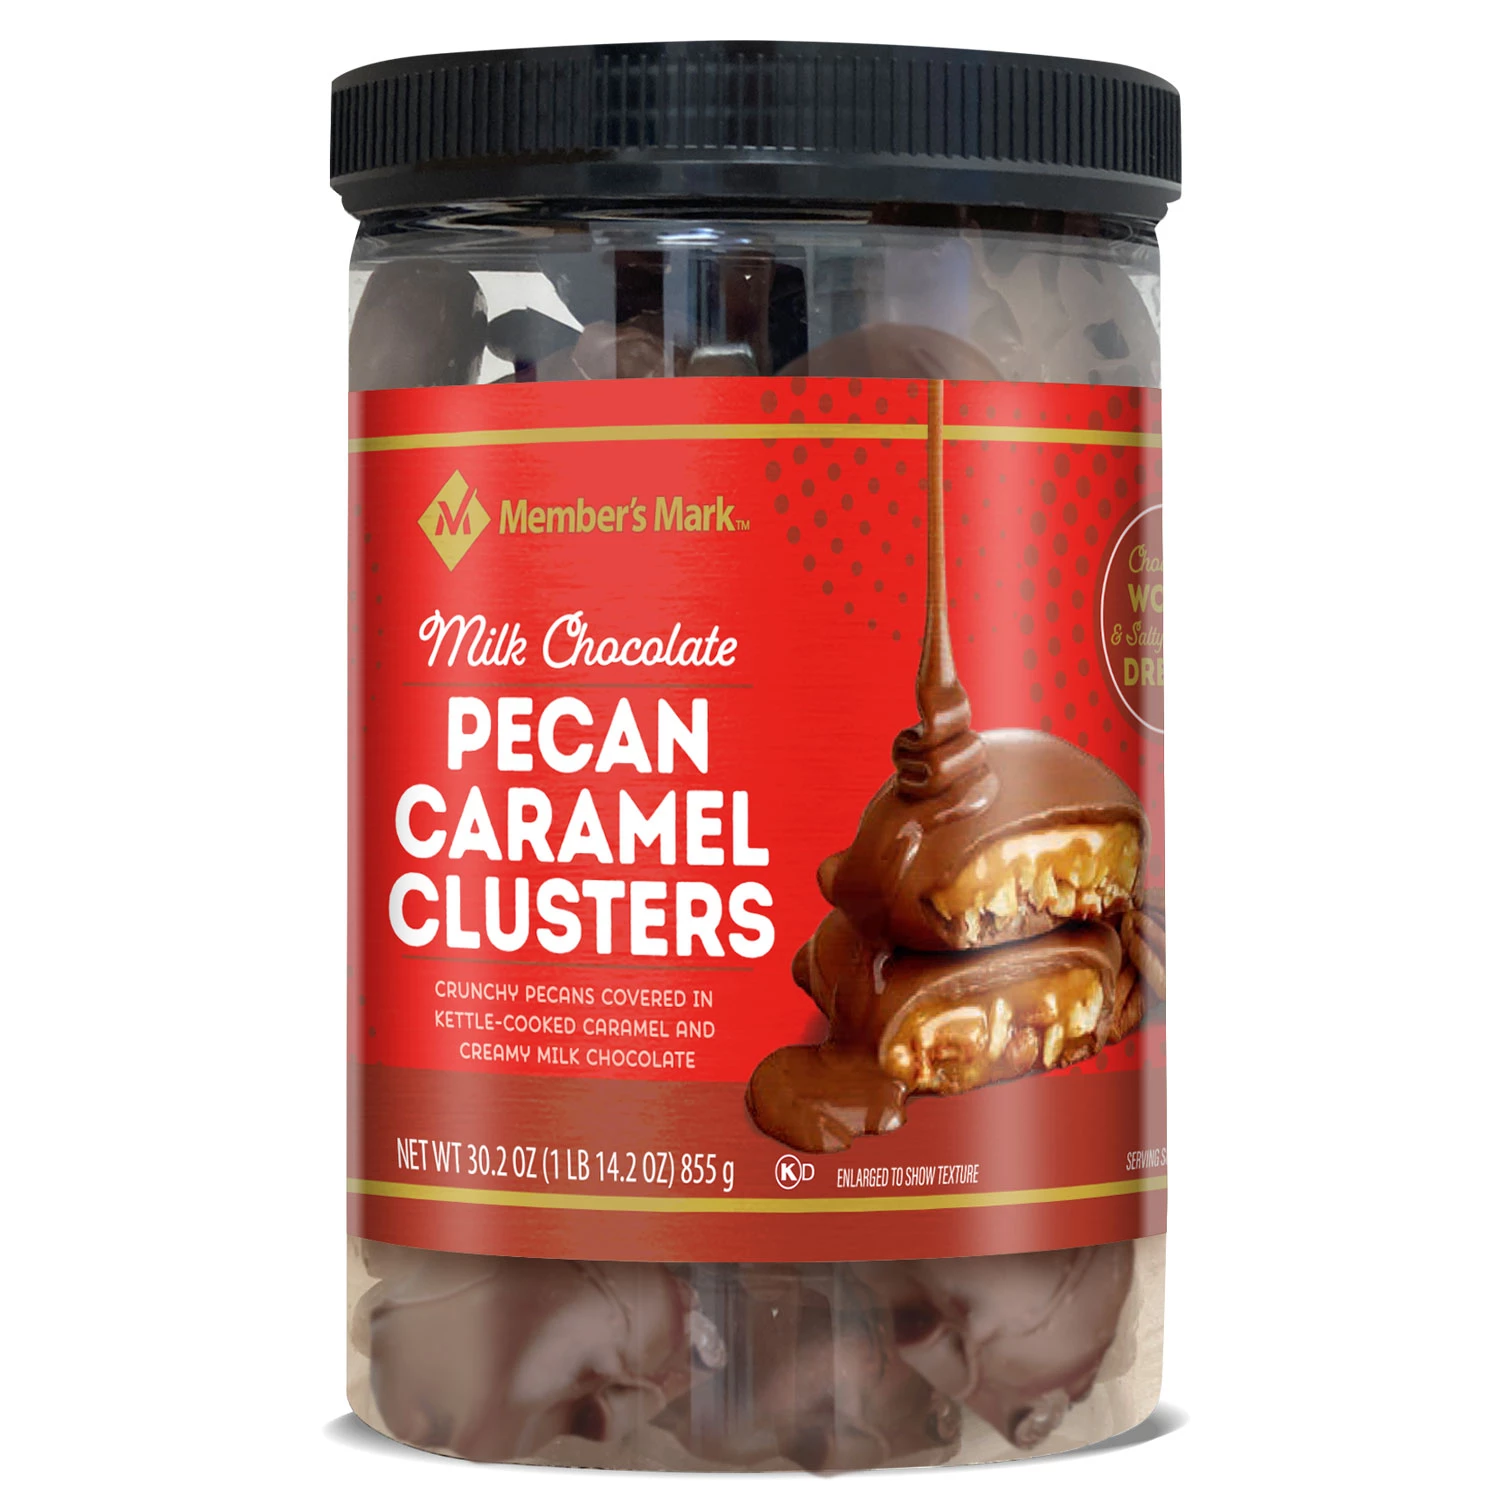 Member's Mark Milk Chocolate Pecan Caramel Clusters